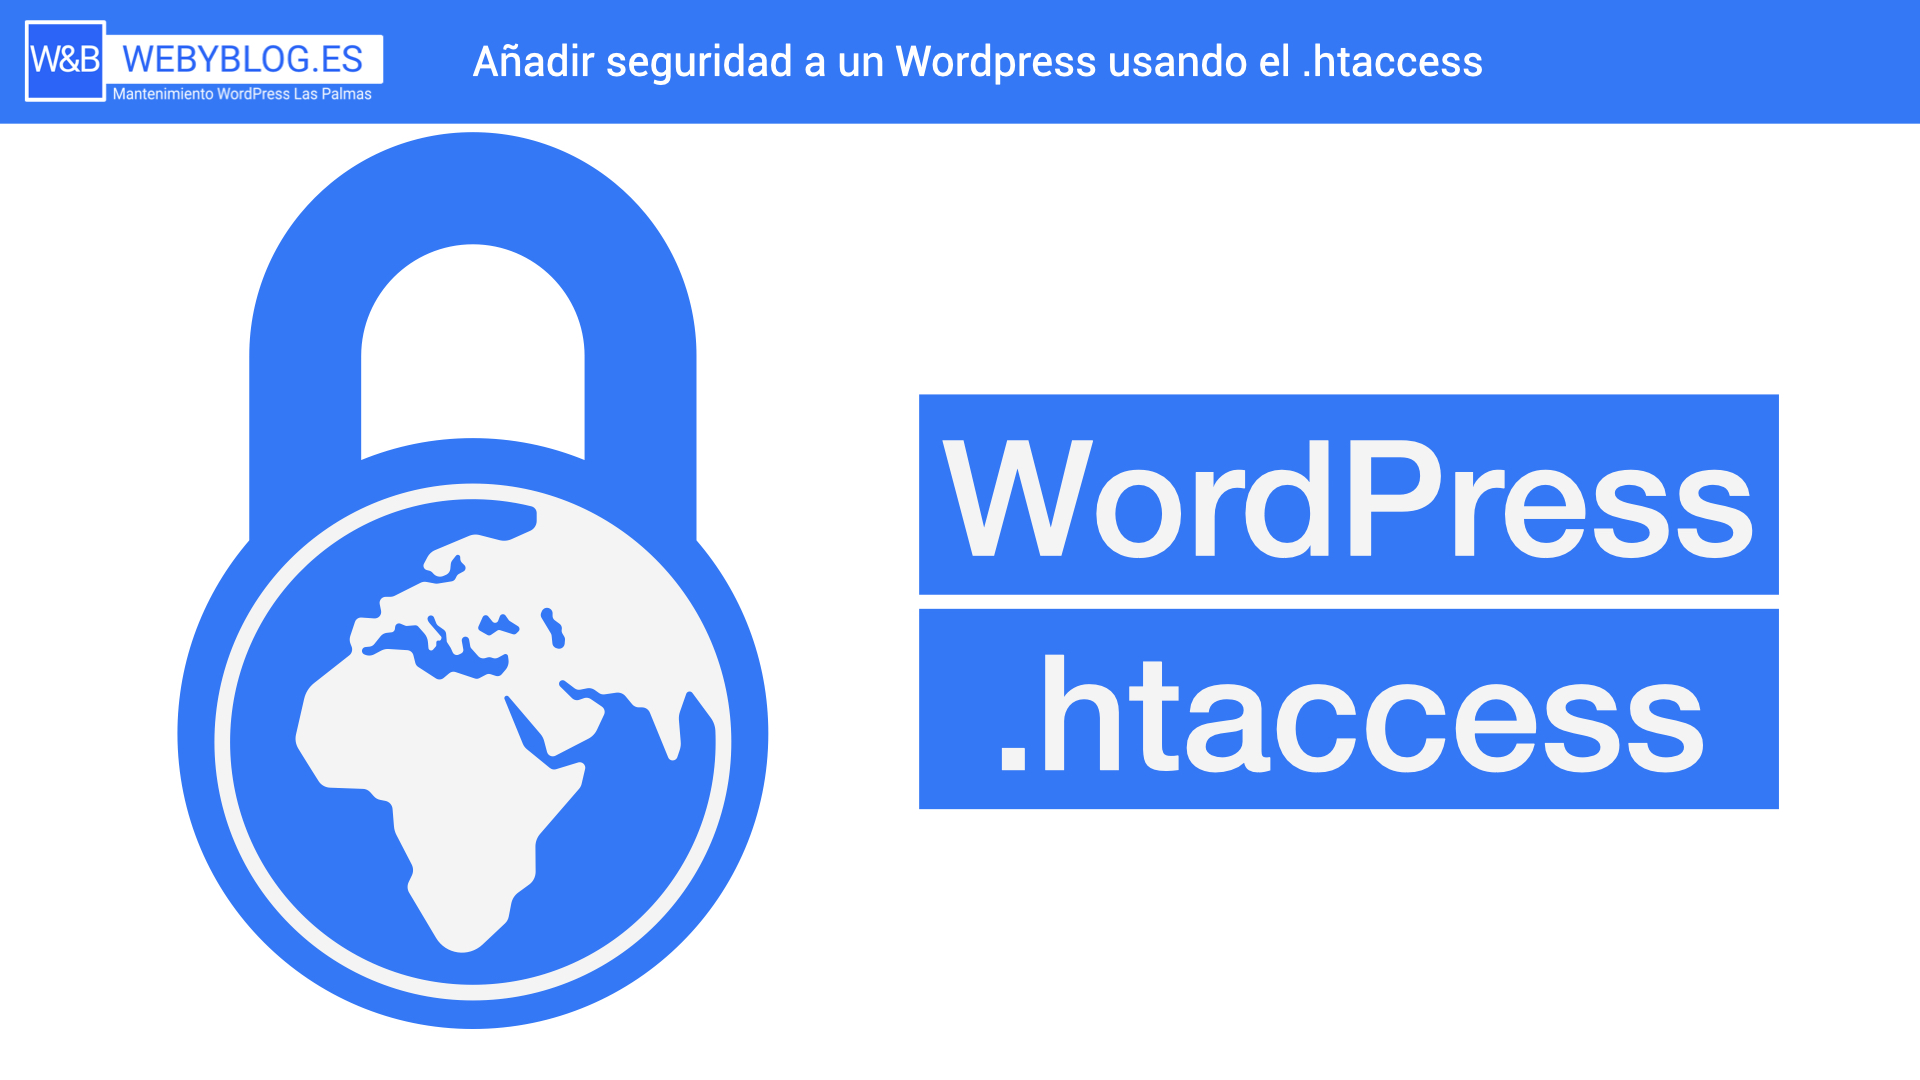 Añadir seguridad a un wordpress usando el .htaccess